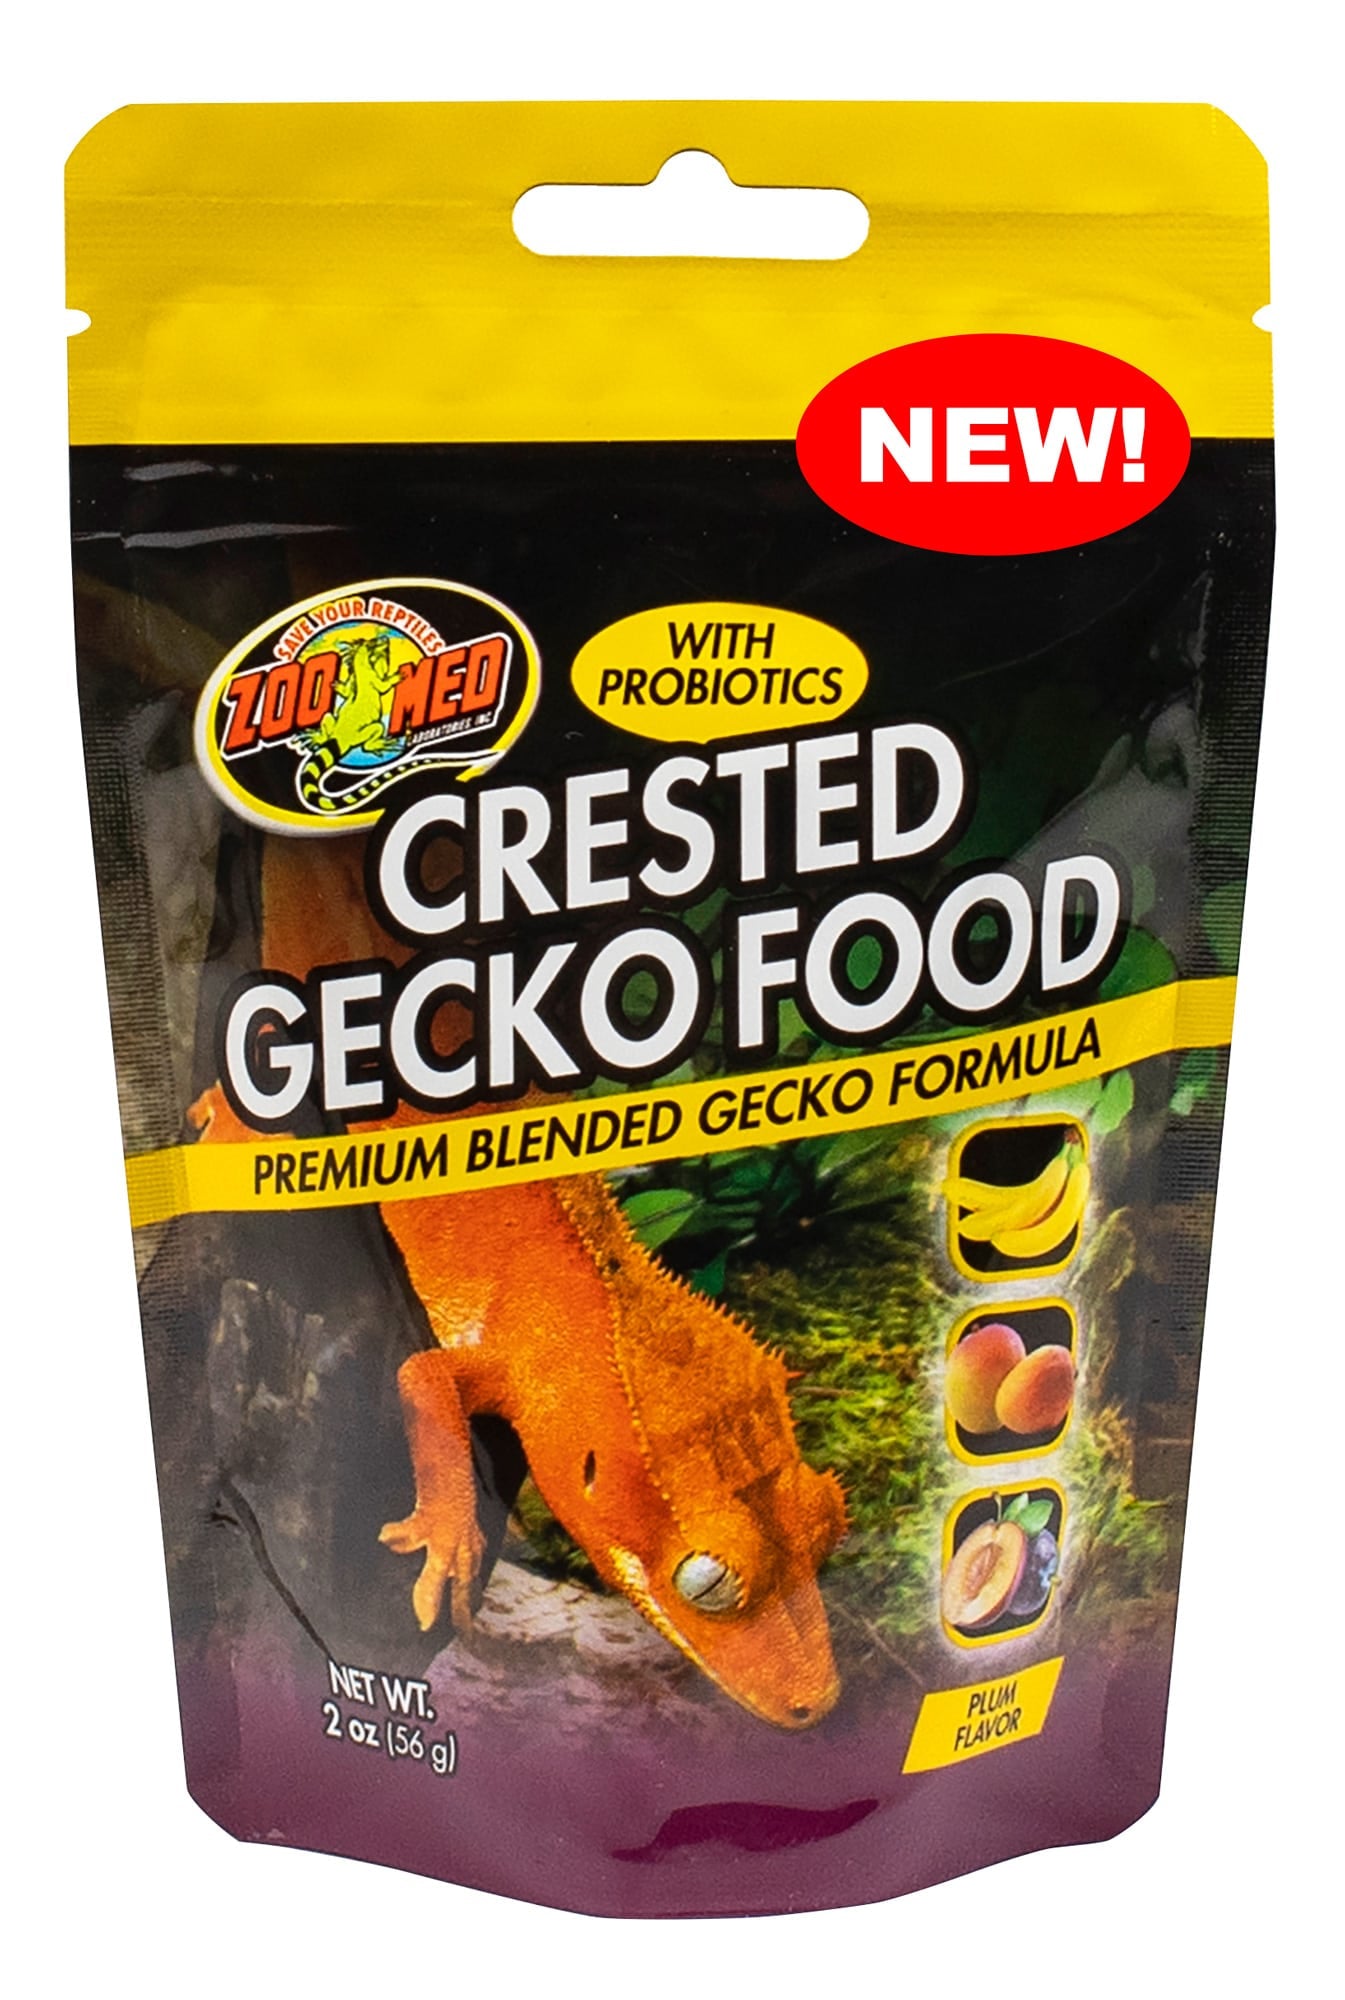 2 oz Zoo Med Crested Gecko Food with Probiotics Premium Blended Gecko Formula Plum Flavor